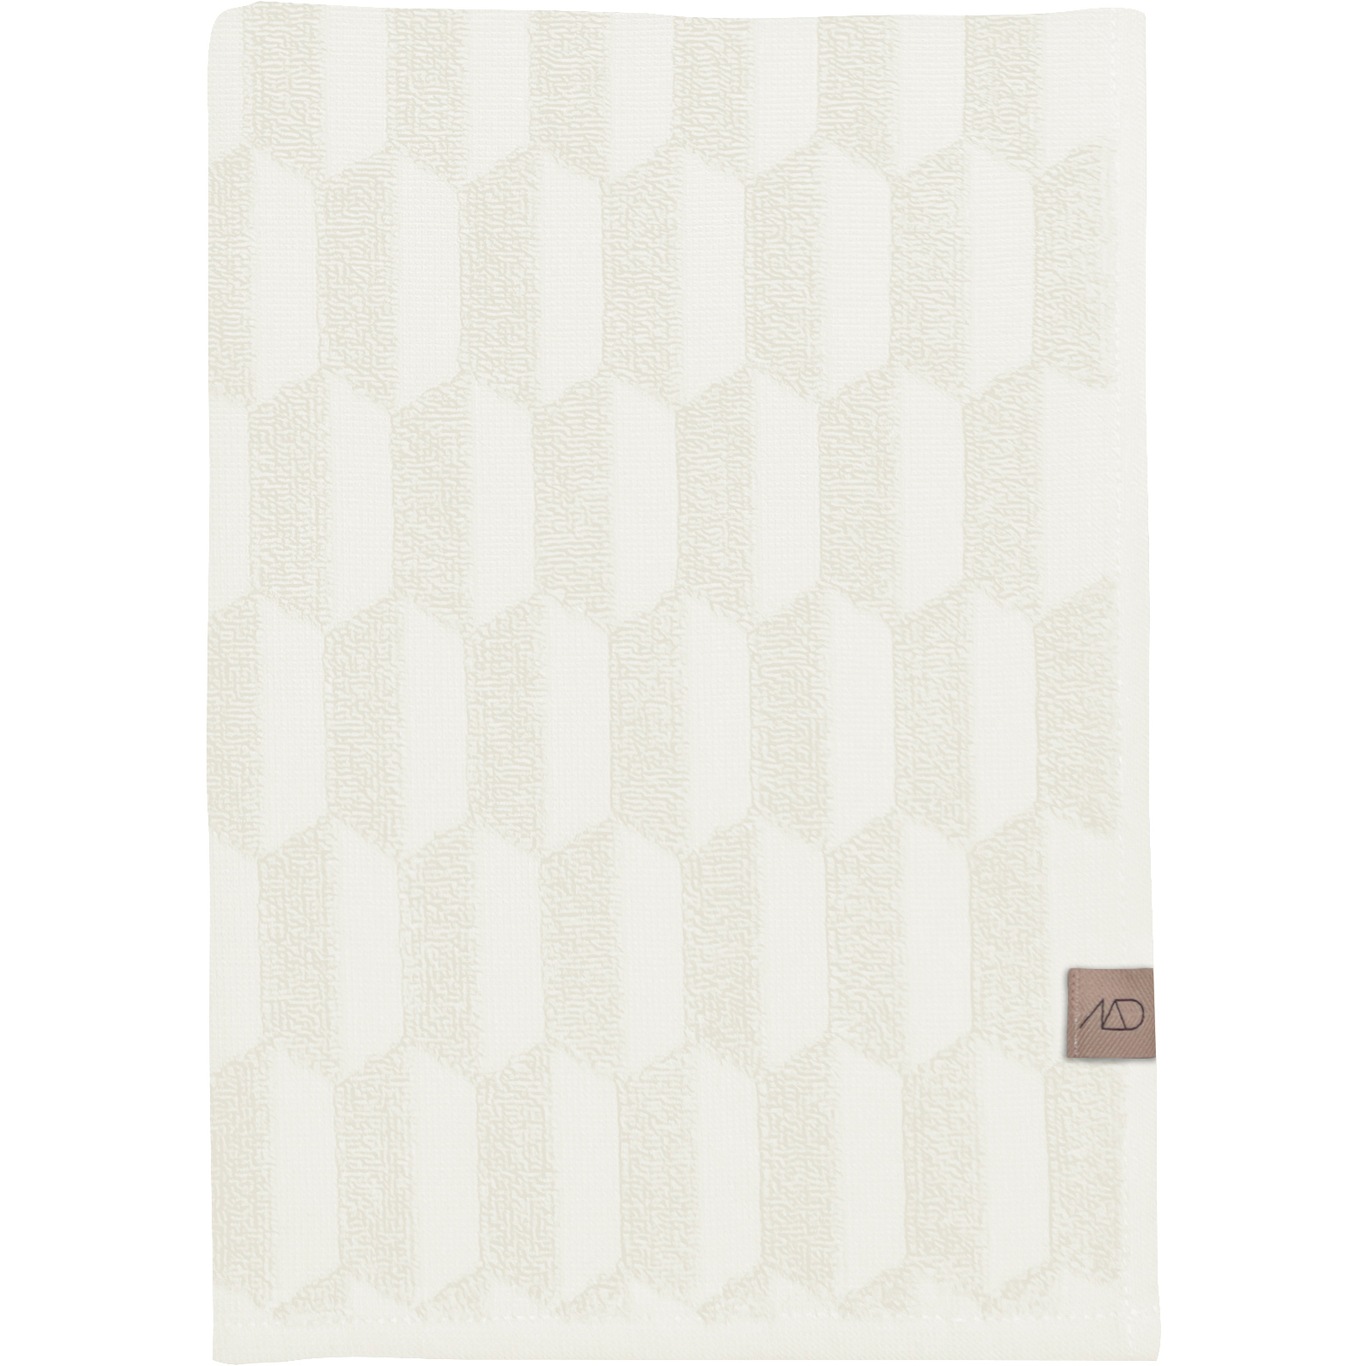 Geo Håndkle Off-white 2-pk, 35x55 cm